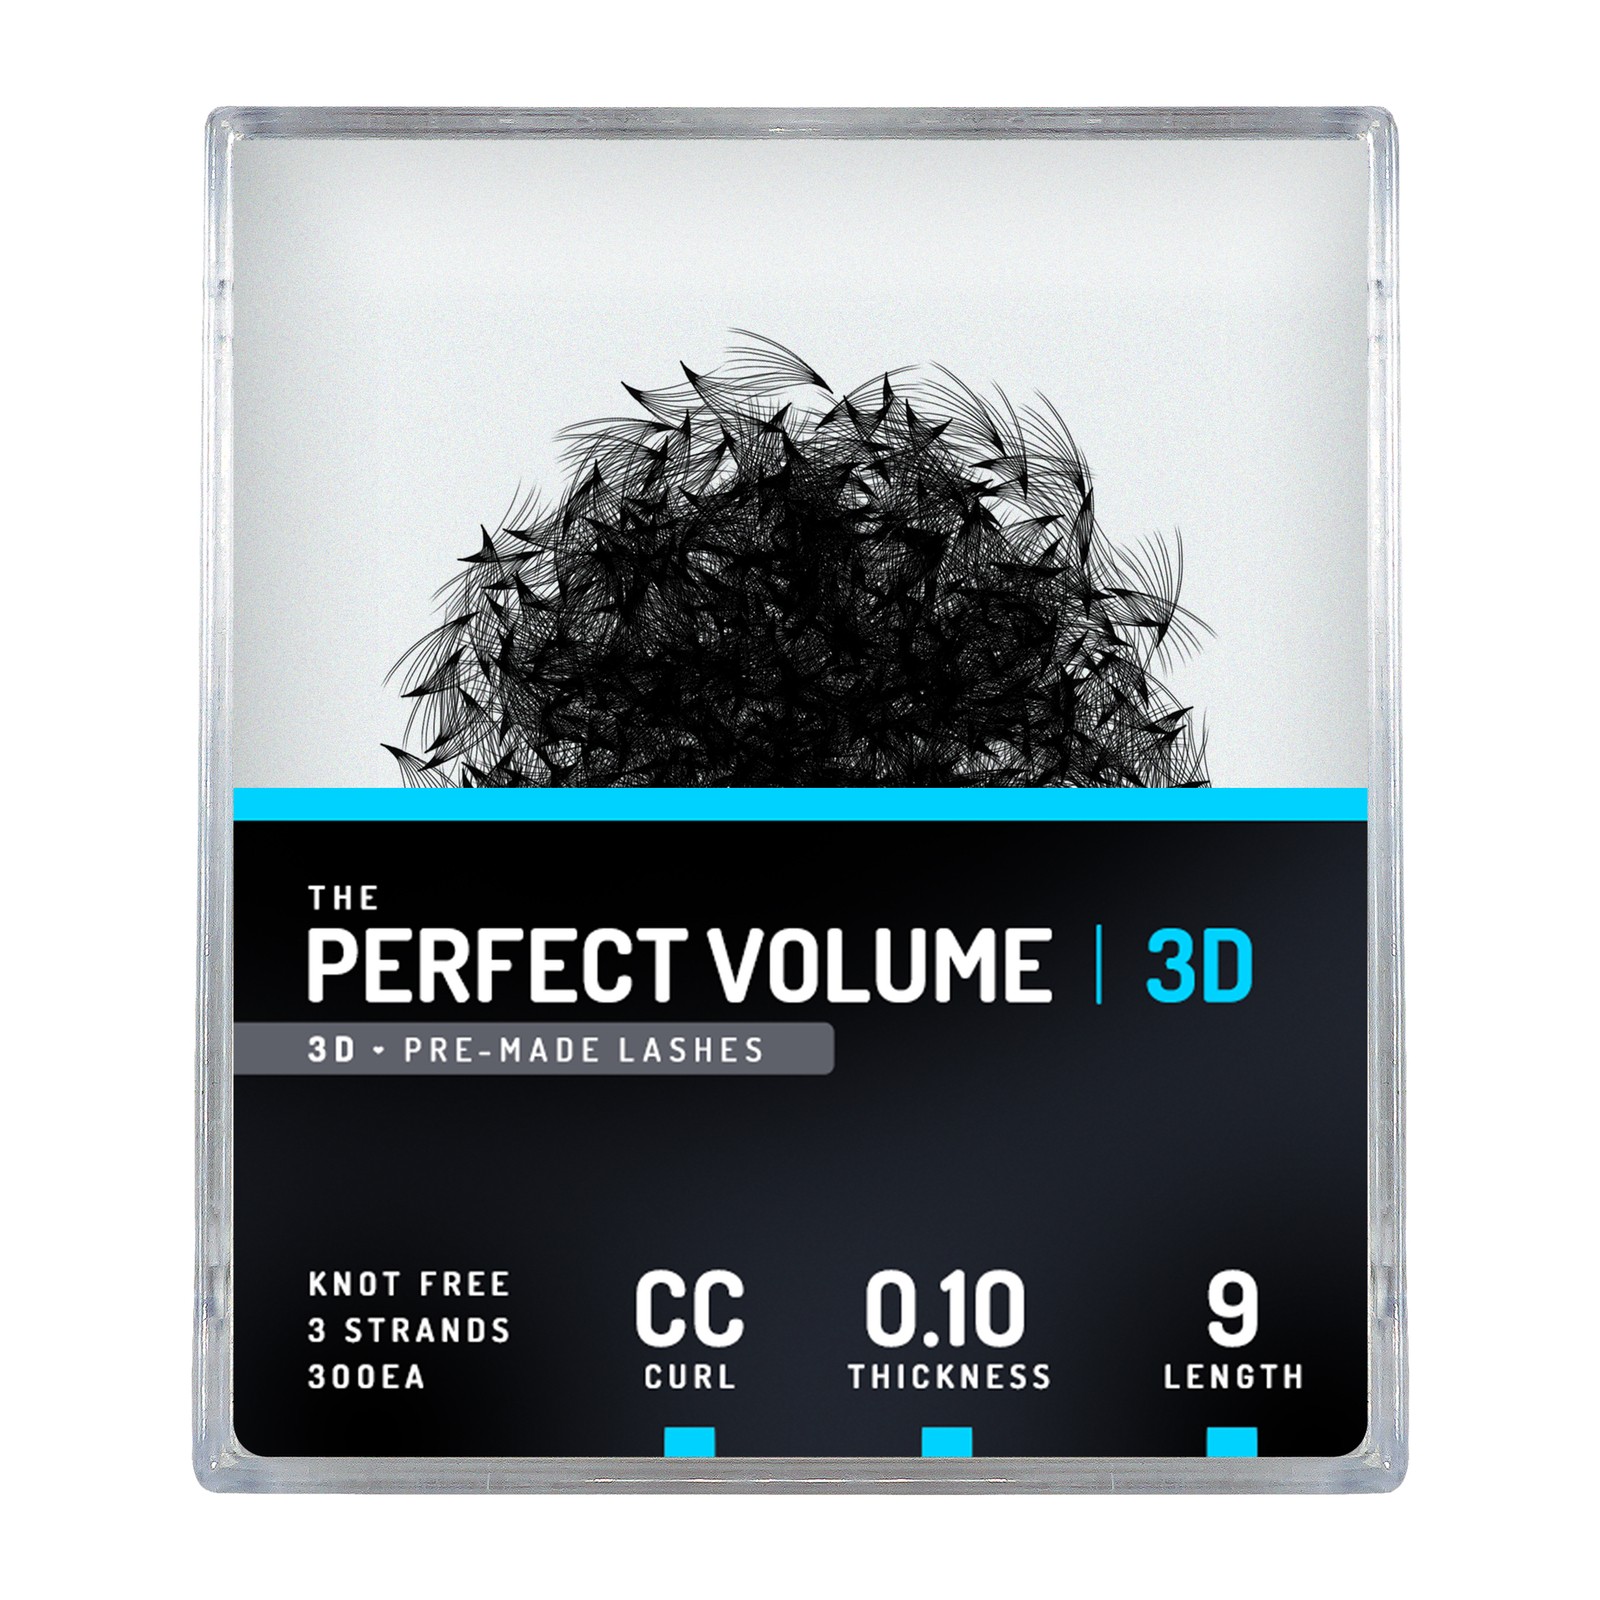 Volume parfait -  300 buchesele premade 3D -  9mm, CC, 0.10mm